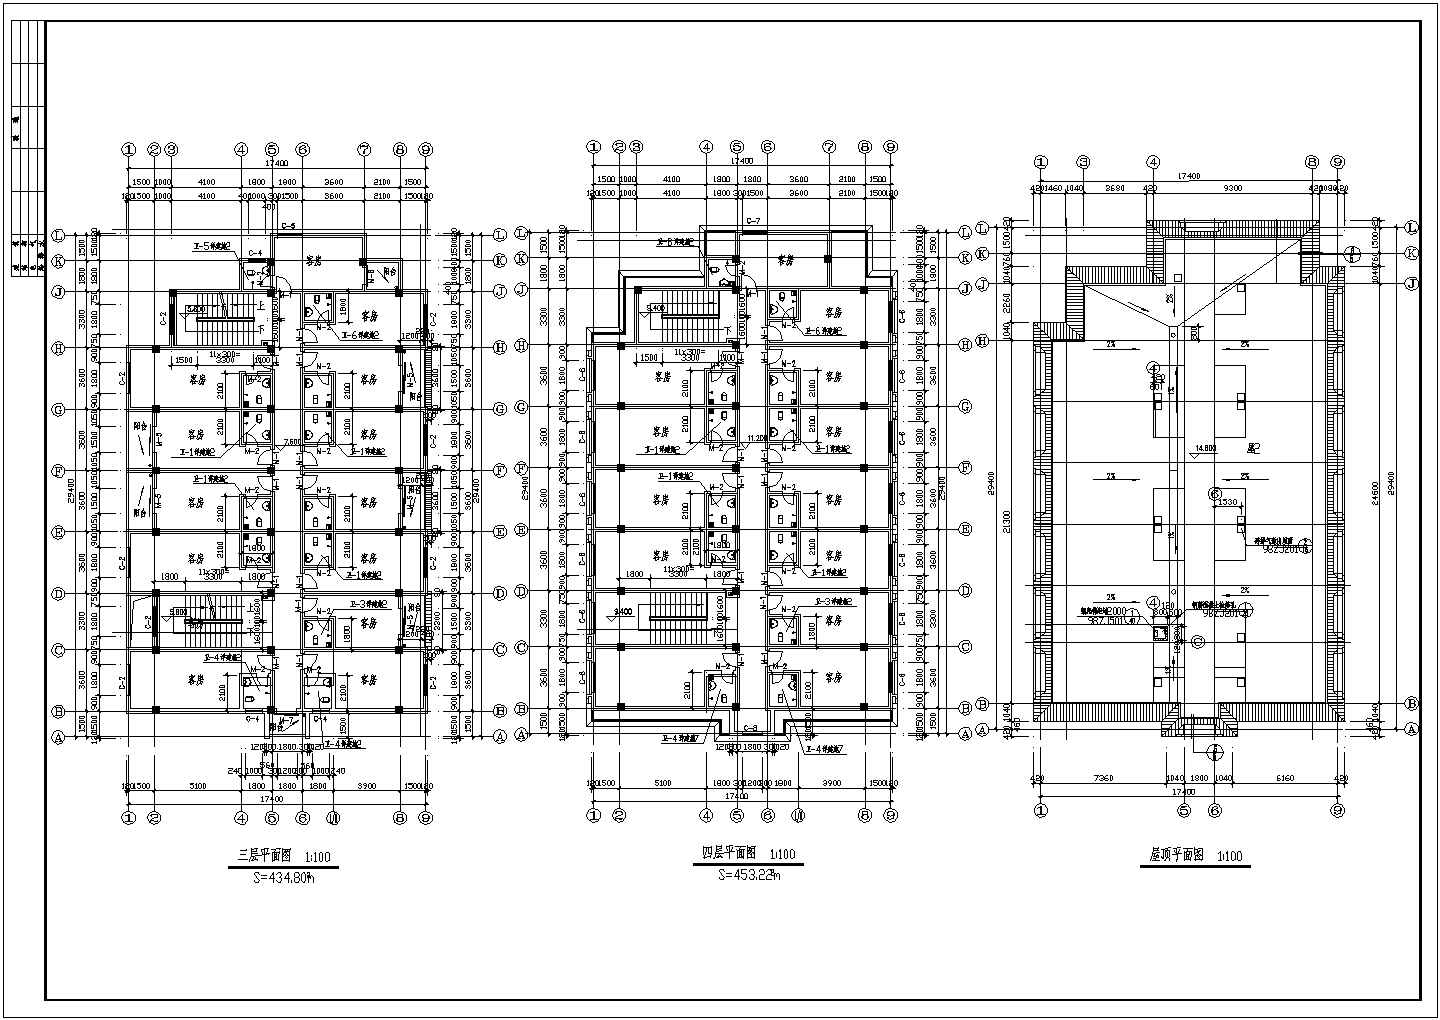 市某招待所建筑设计CAD方案施工图